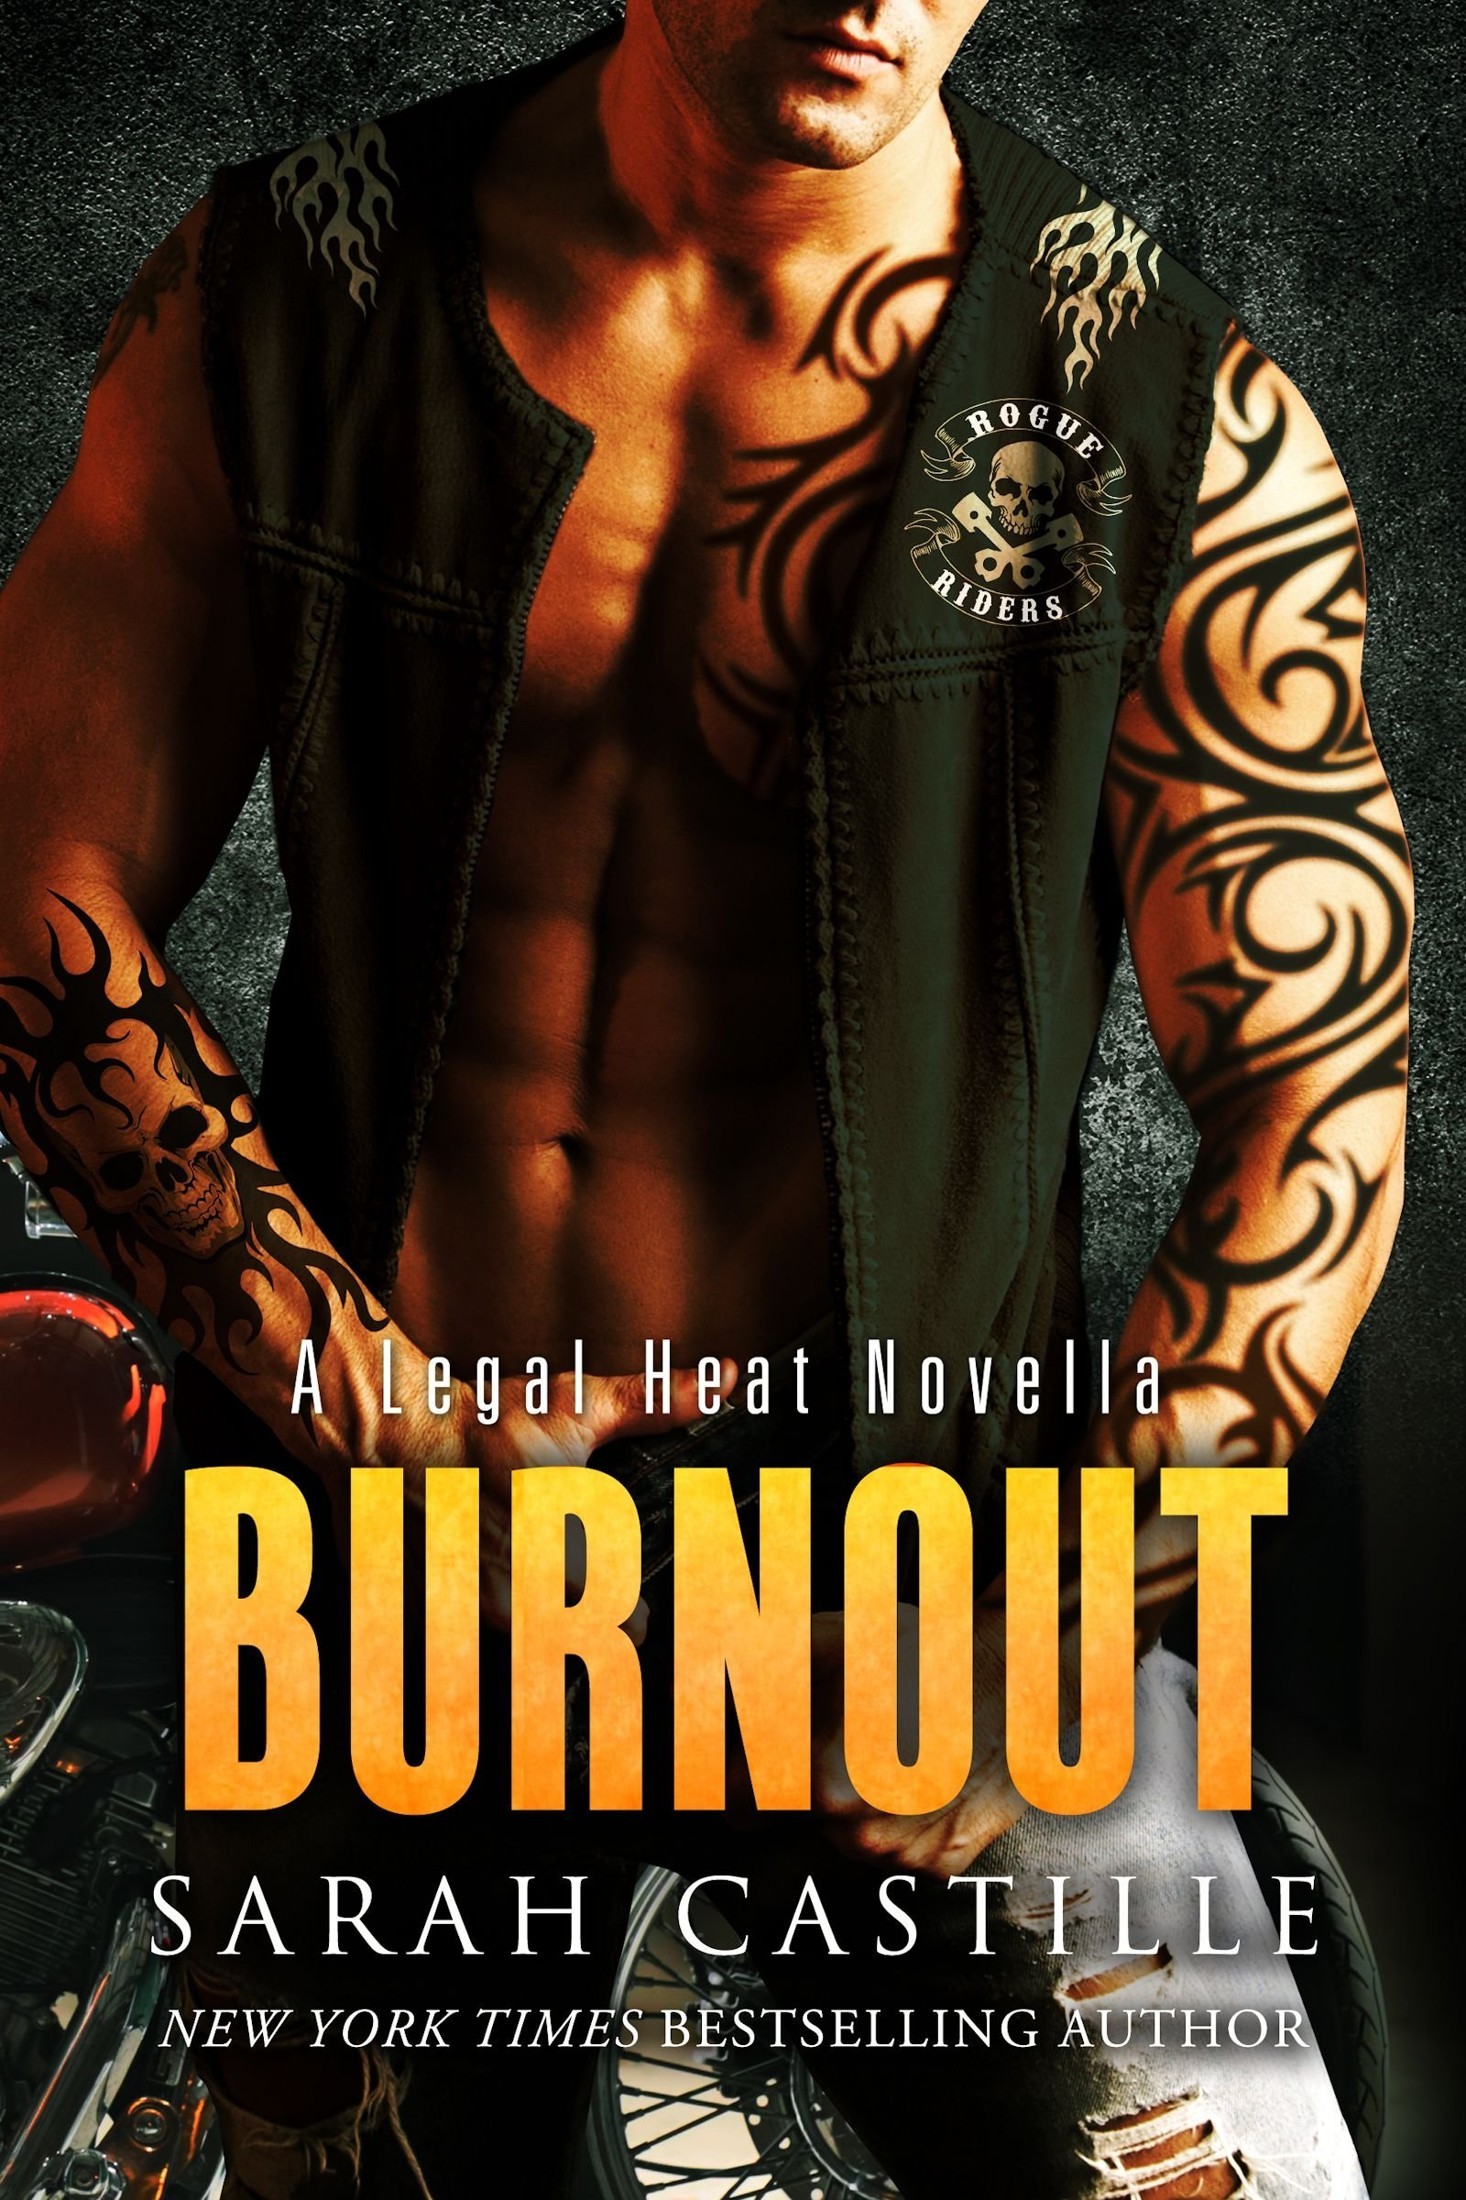 Burnout: A Legal Heat Novella by Sarah Castille